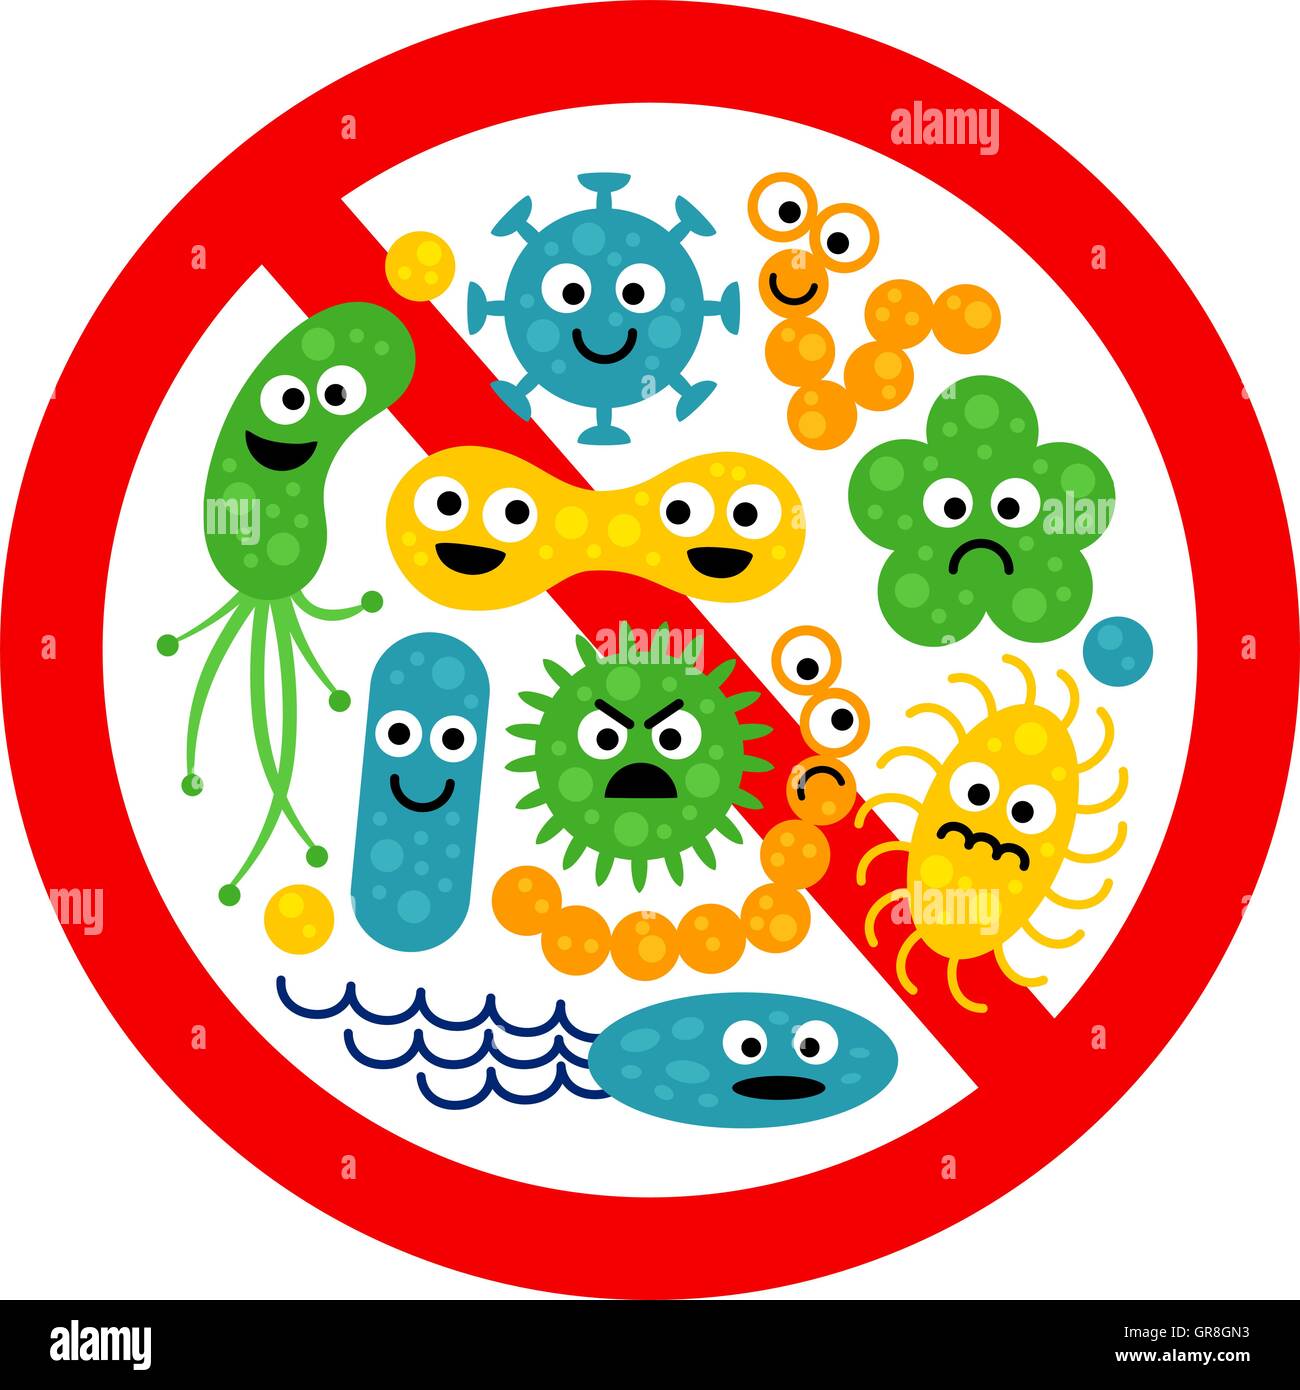 Плакат микробы